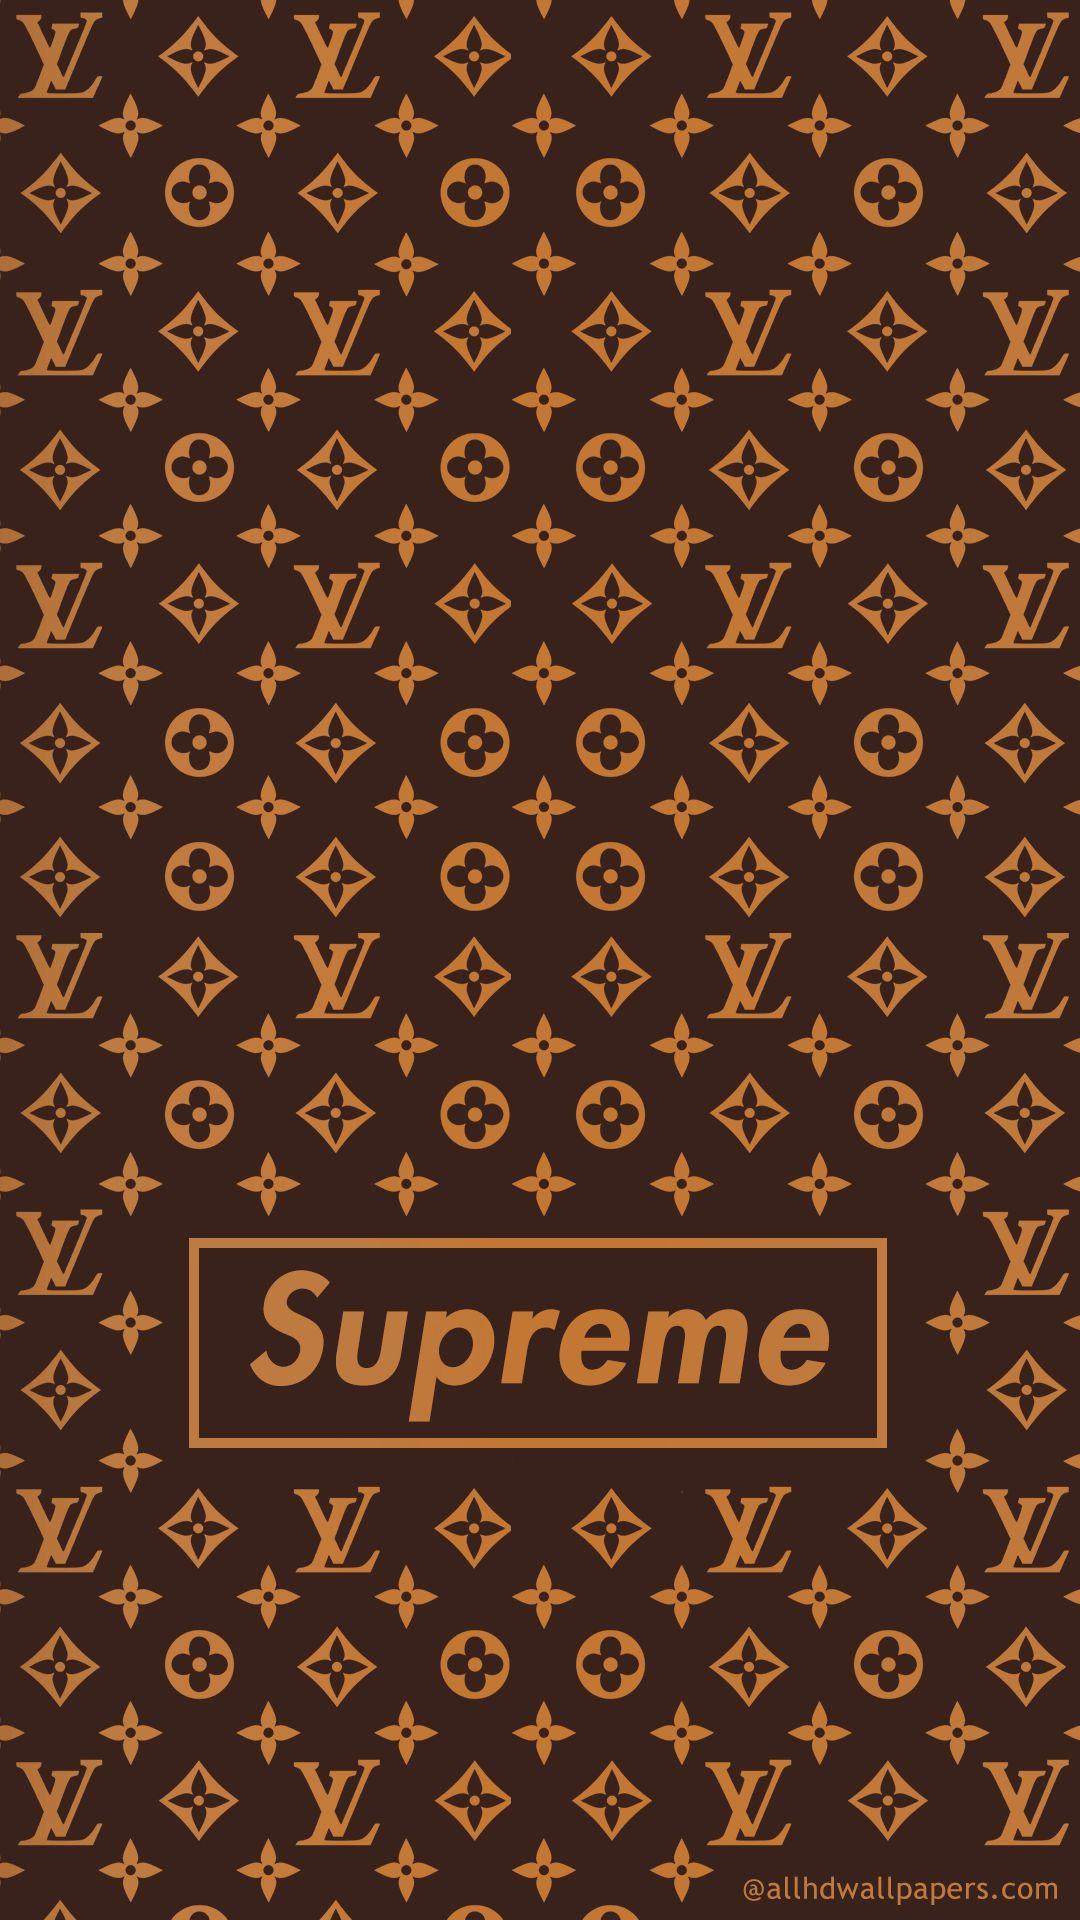 Supreme x Louis Vuitton